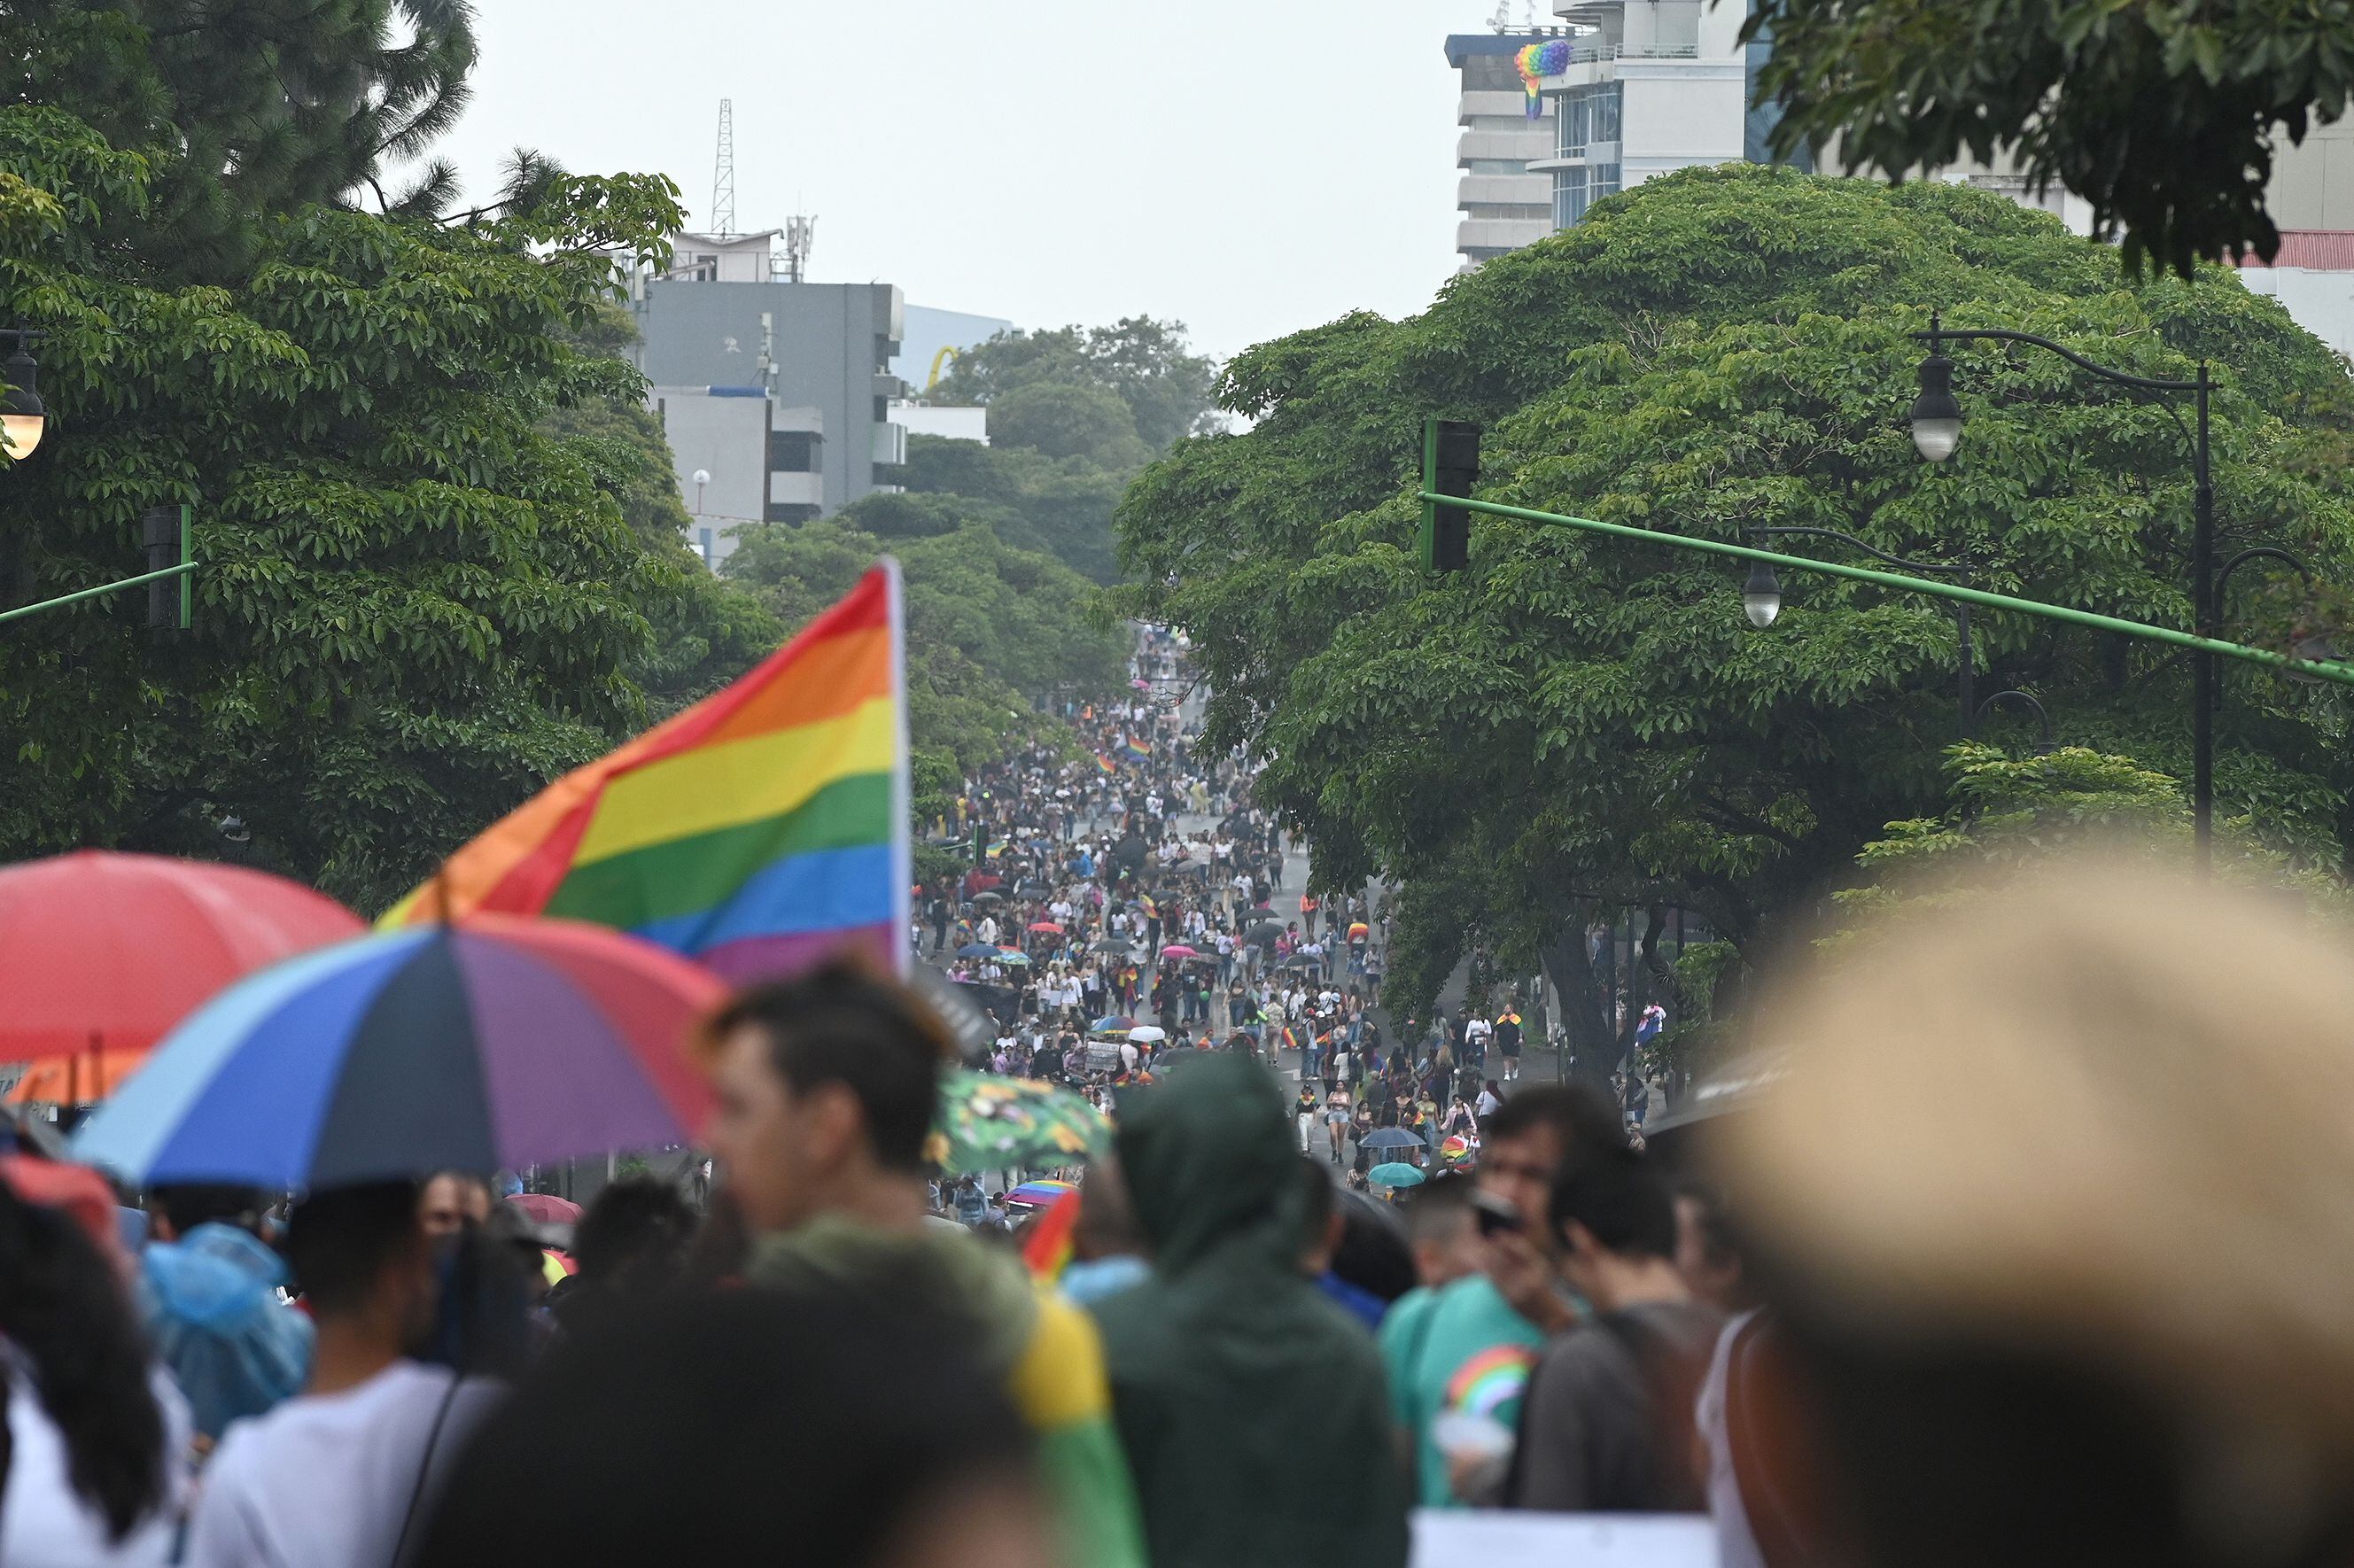 El 26 de junio del 2022 y luego de dos años de no realizar presencialmente la actividad por la pandemia, se celebró el Festival del Pride Costa Rica 2022 en el que la comunidad LGBTIQ+ desfiló por sus derechos en el centro de la capital. Este domingo 25 las calles volverán a cubrirse de color y fiesta. 